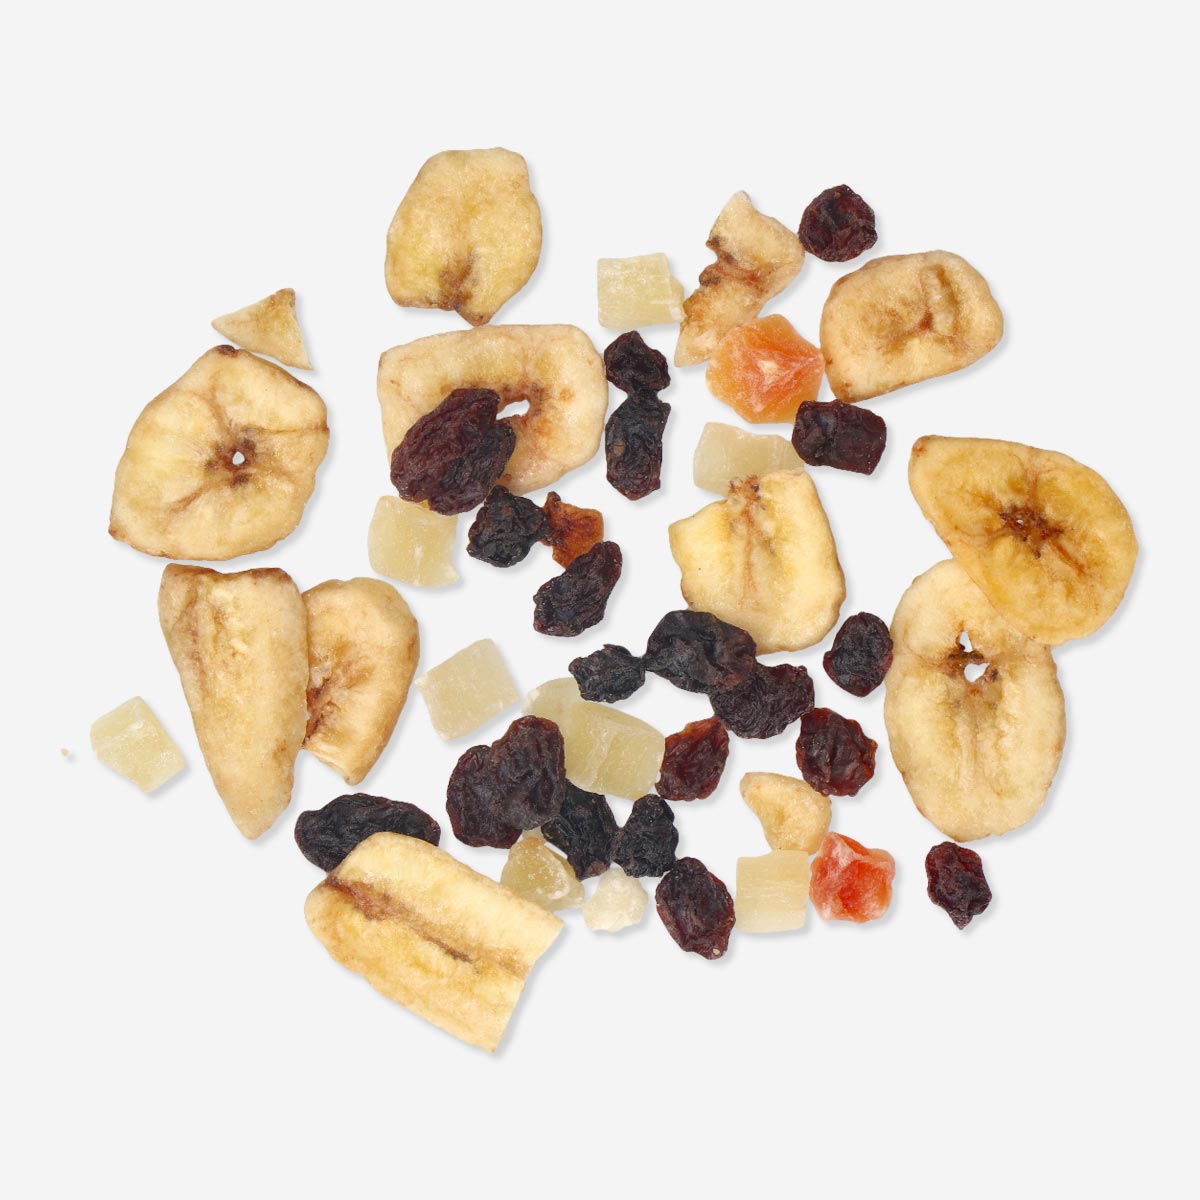 Gedroogd fruit & noten